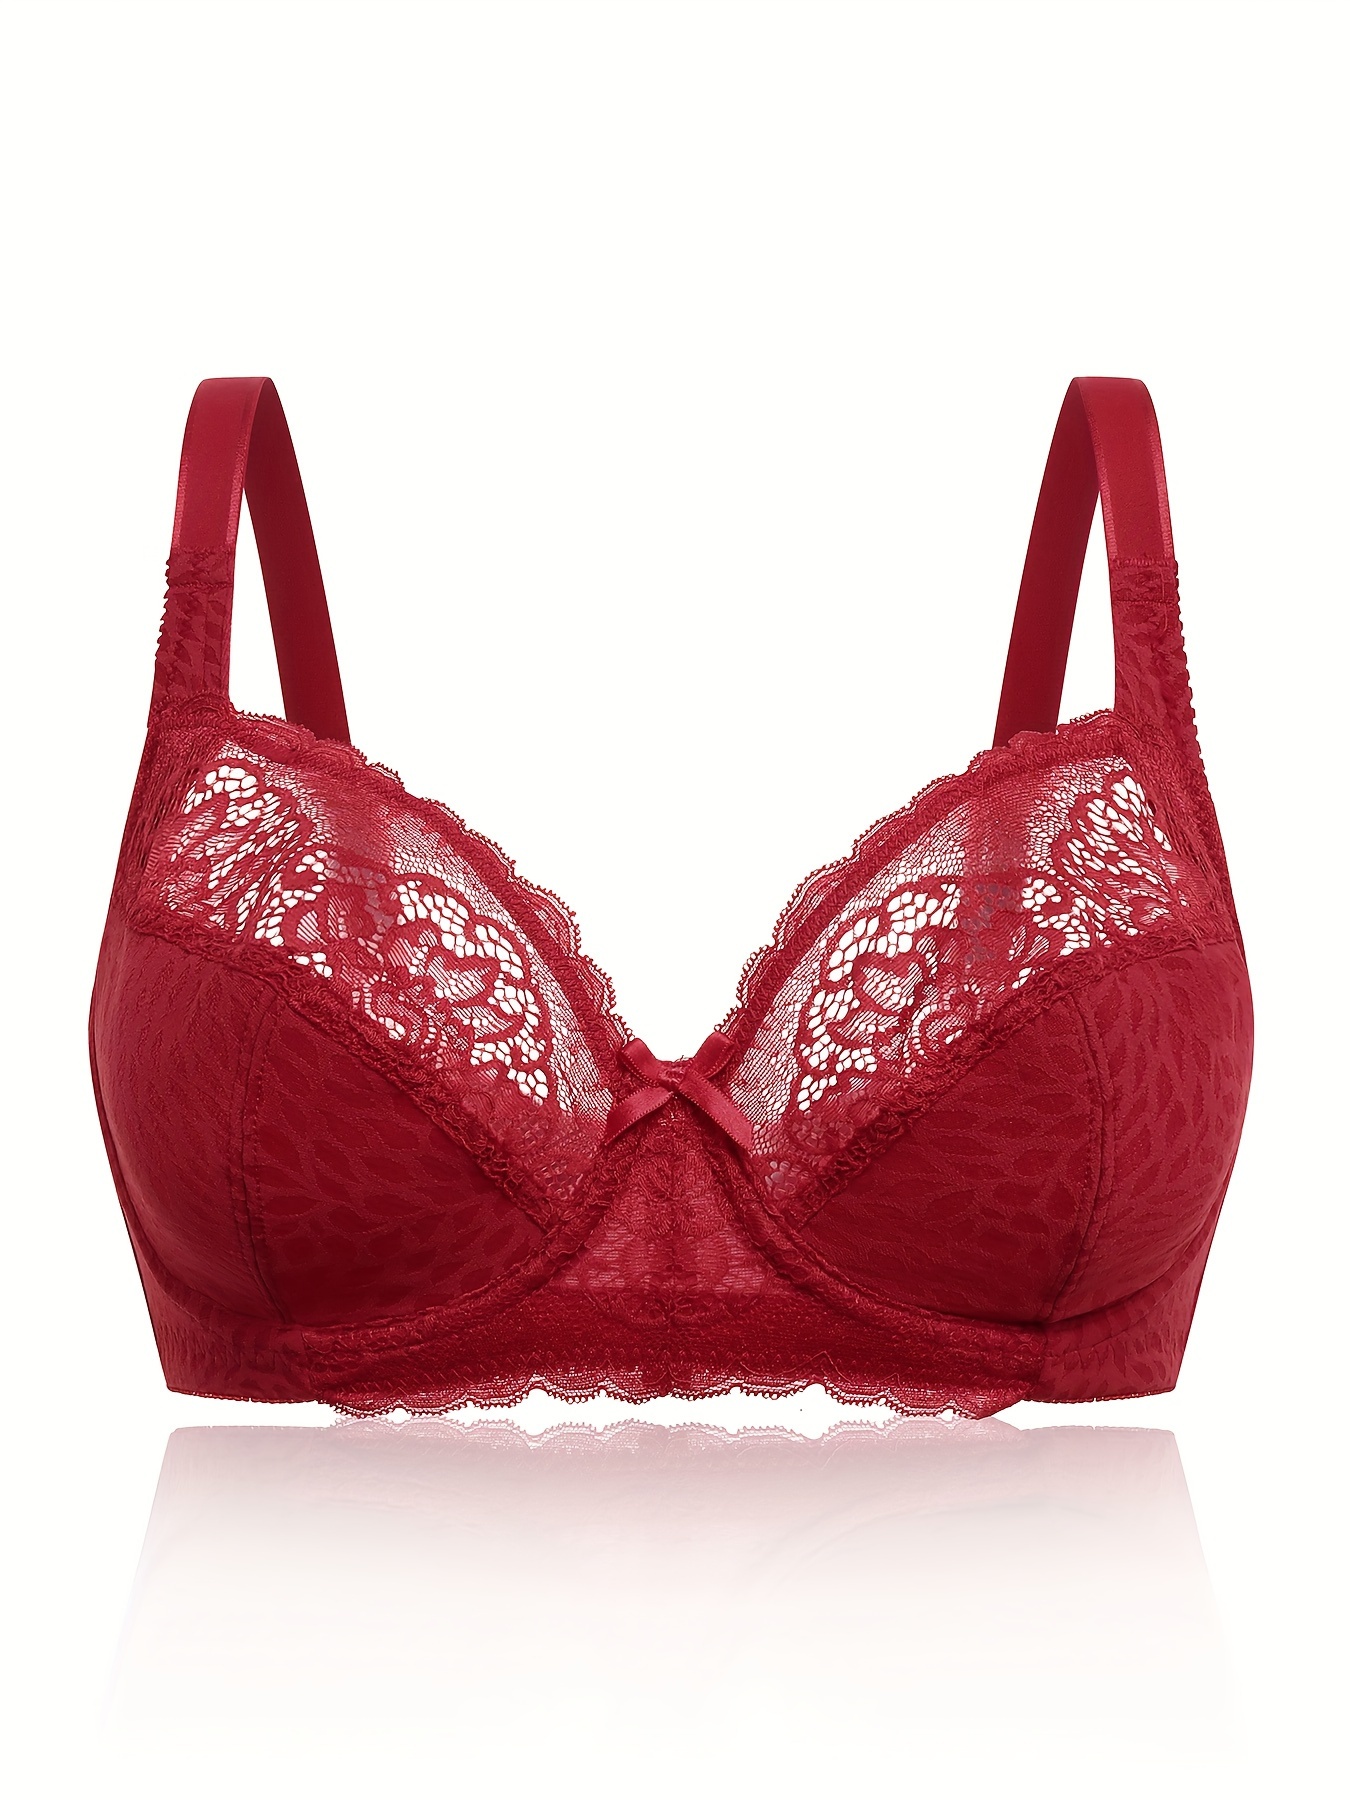 Buy Red Bras for Women by Lenissa Online